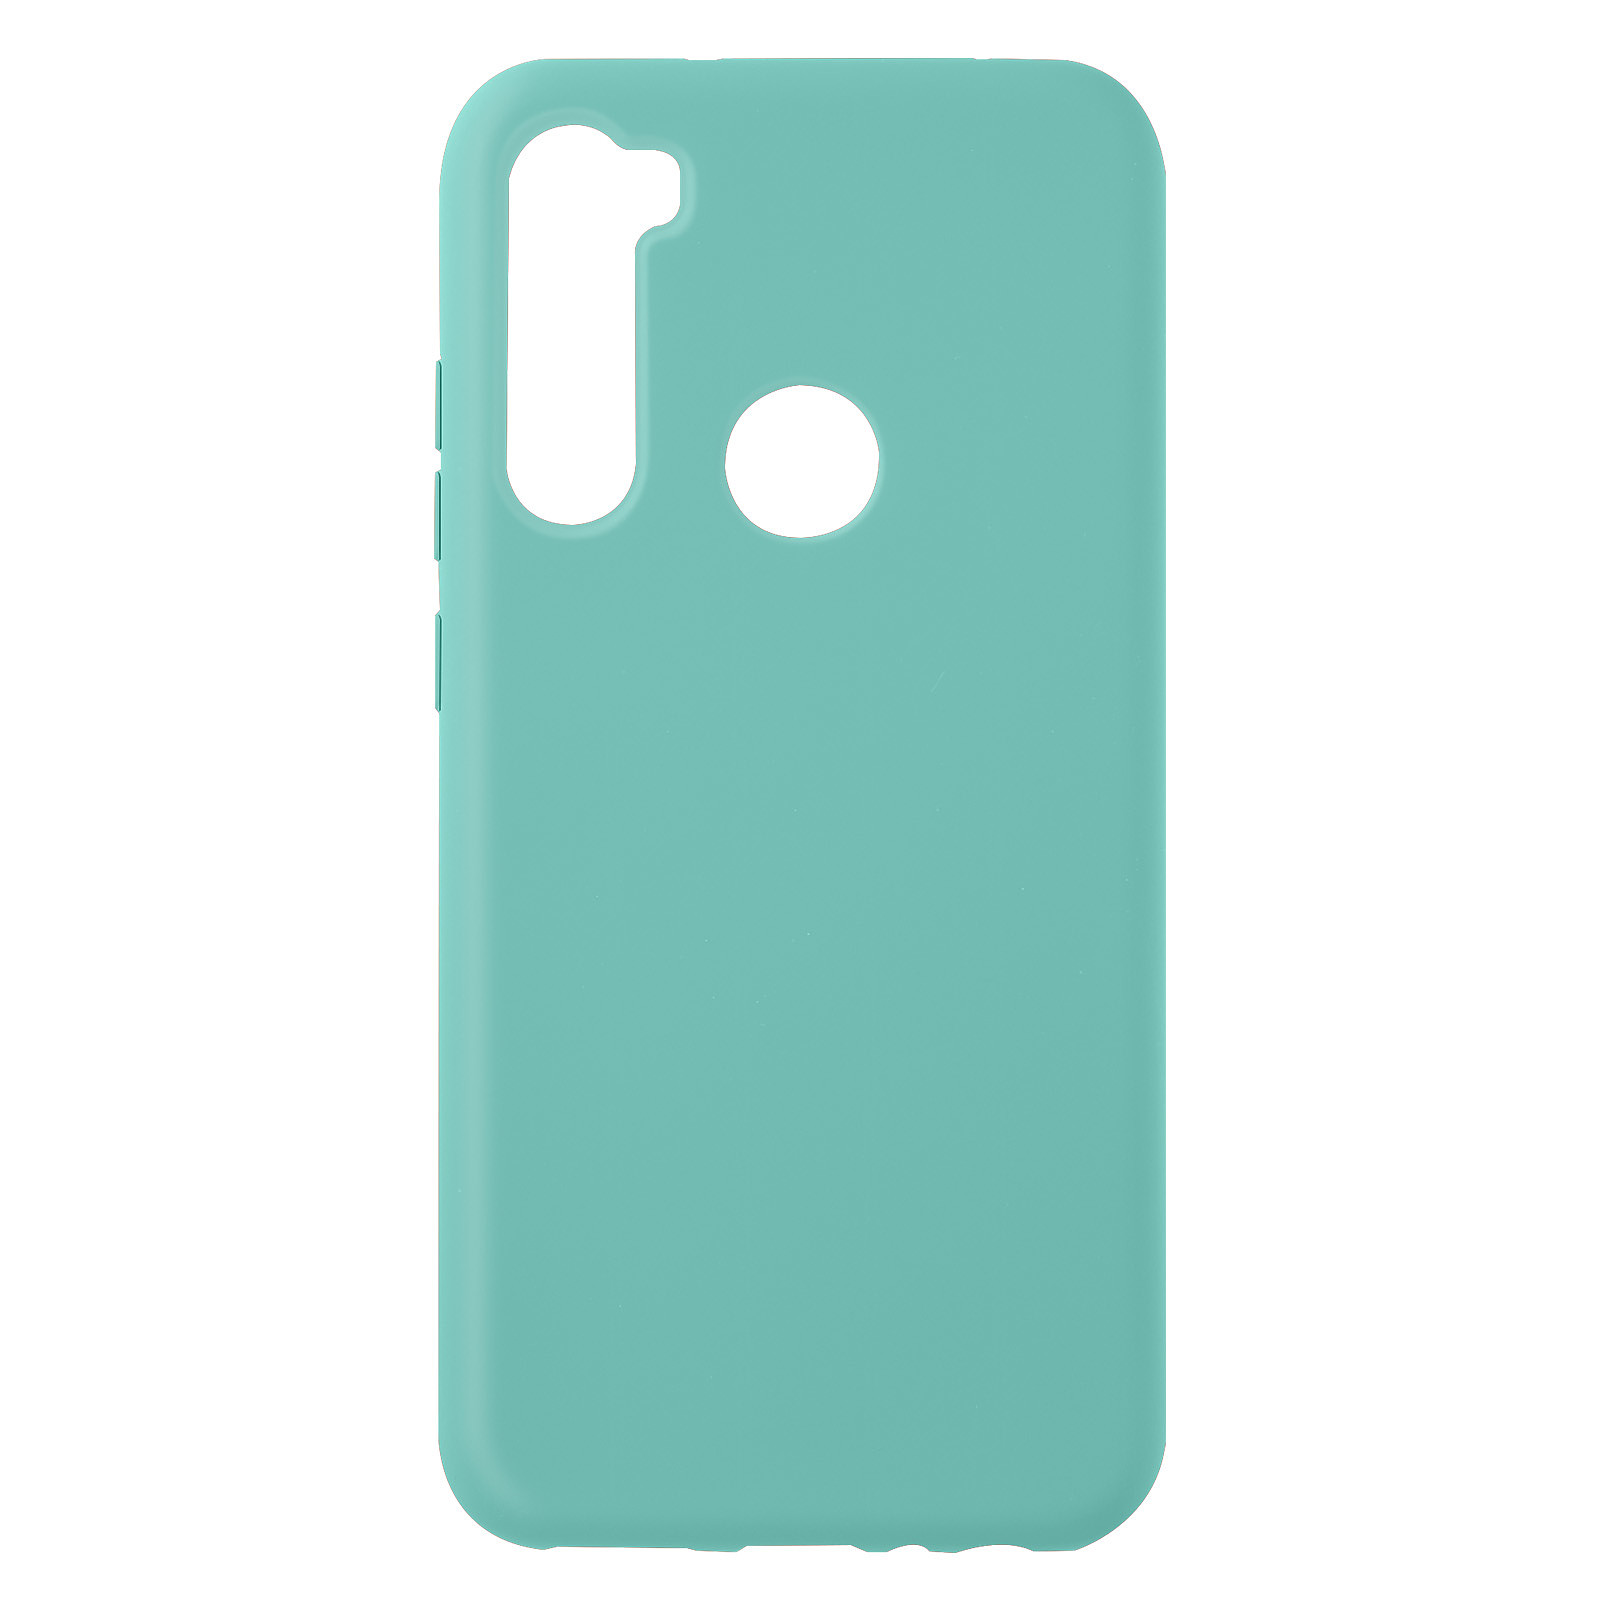 Avizar Coque pour Xiaomi Redmi Note 8 Silicone Semi-rigide Finition Soft-touch Fine Turquoise - Coque telephone Avizar